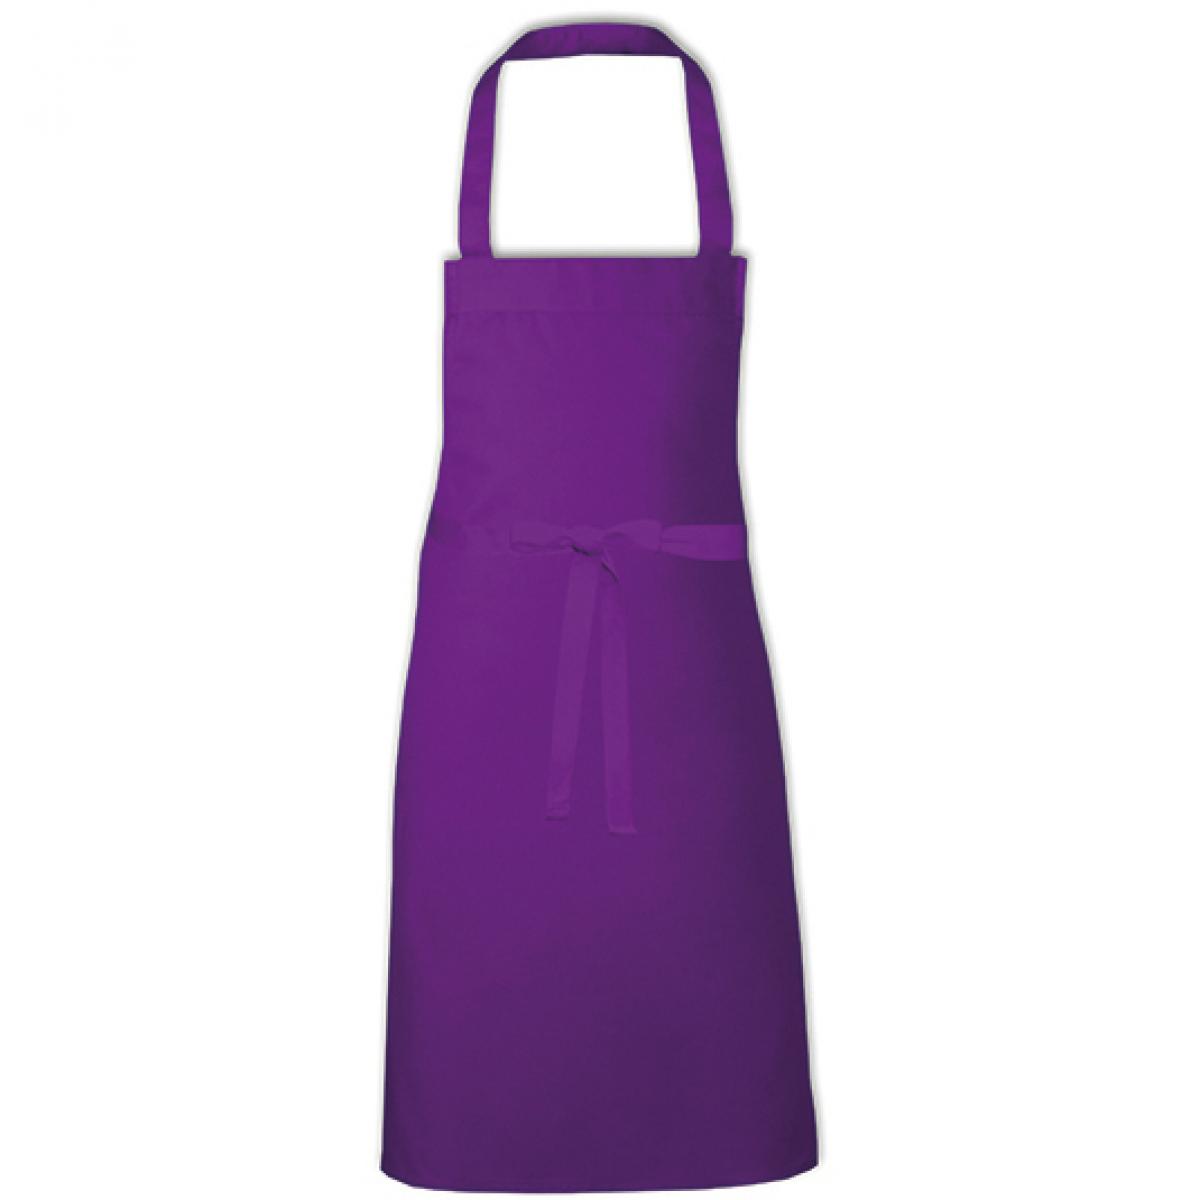 Hersteller: Link Kitchen Wear Herstellernummer: BBQ8073 Artikelbezeichnung: Barbecue Apron - 73 x 80 cm - Waschbar bis 60 °C Farbe: Purple